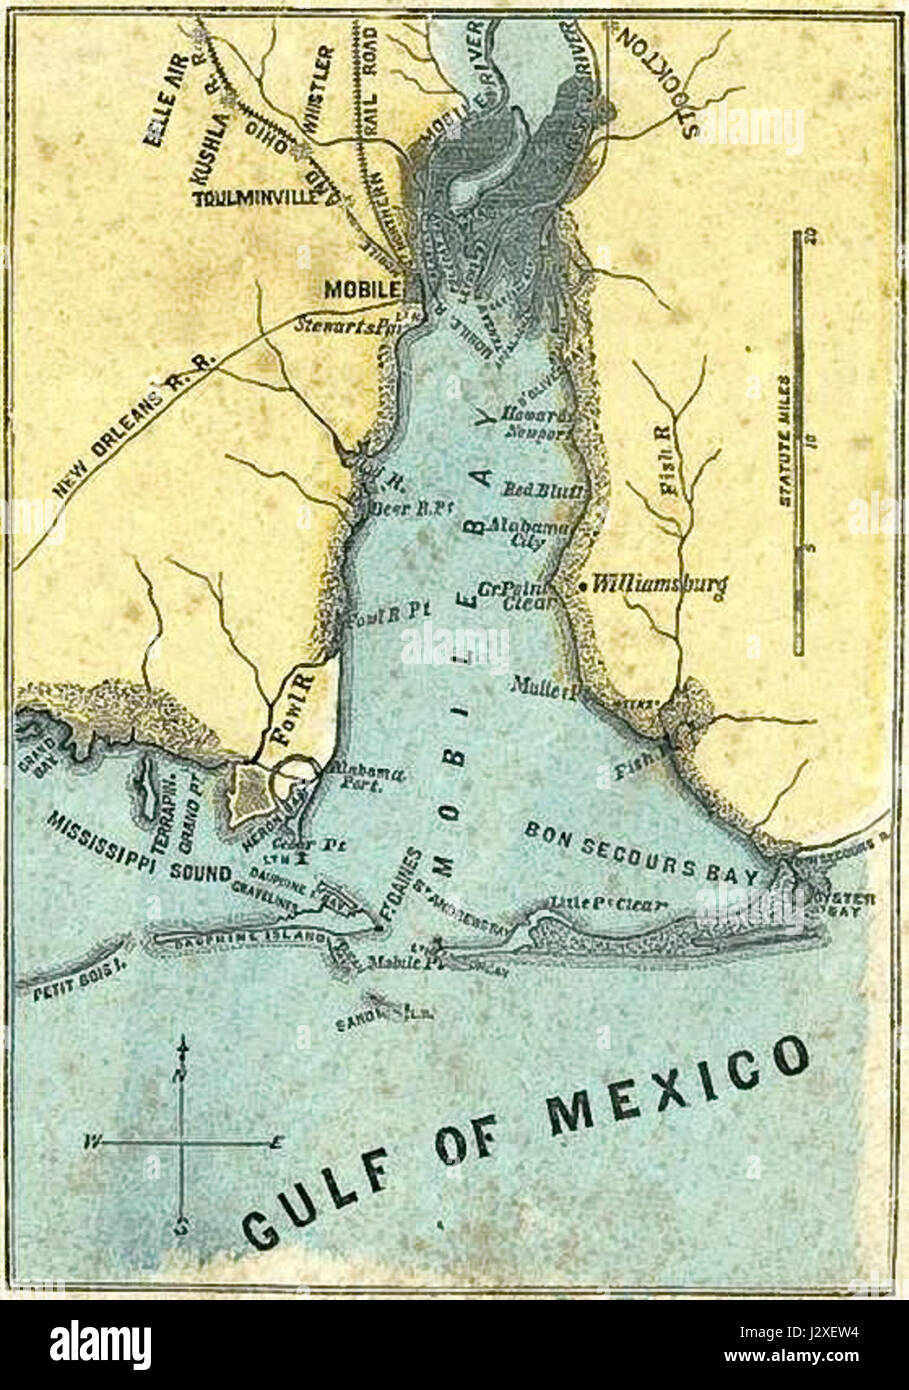 La batalla de Mobile Bay mapa Foto de stock